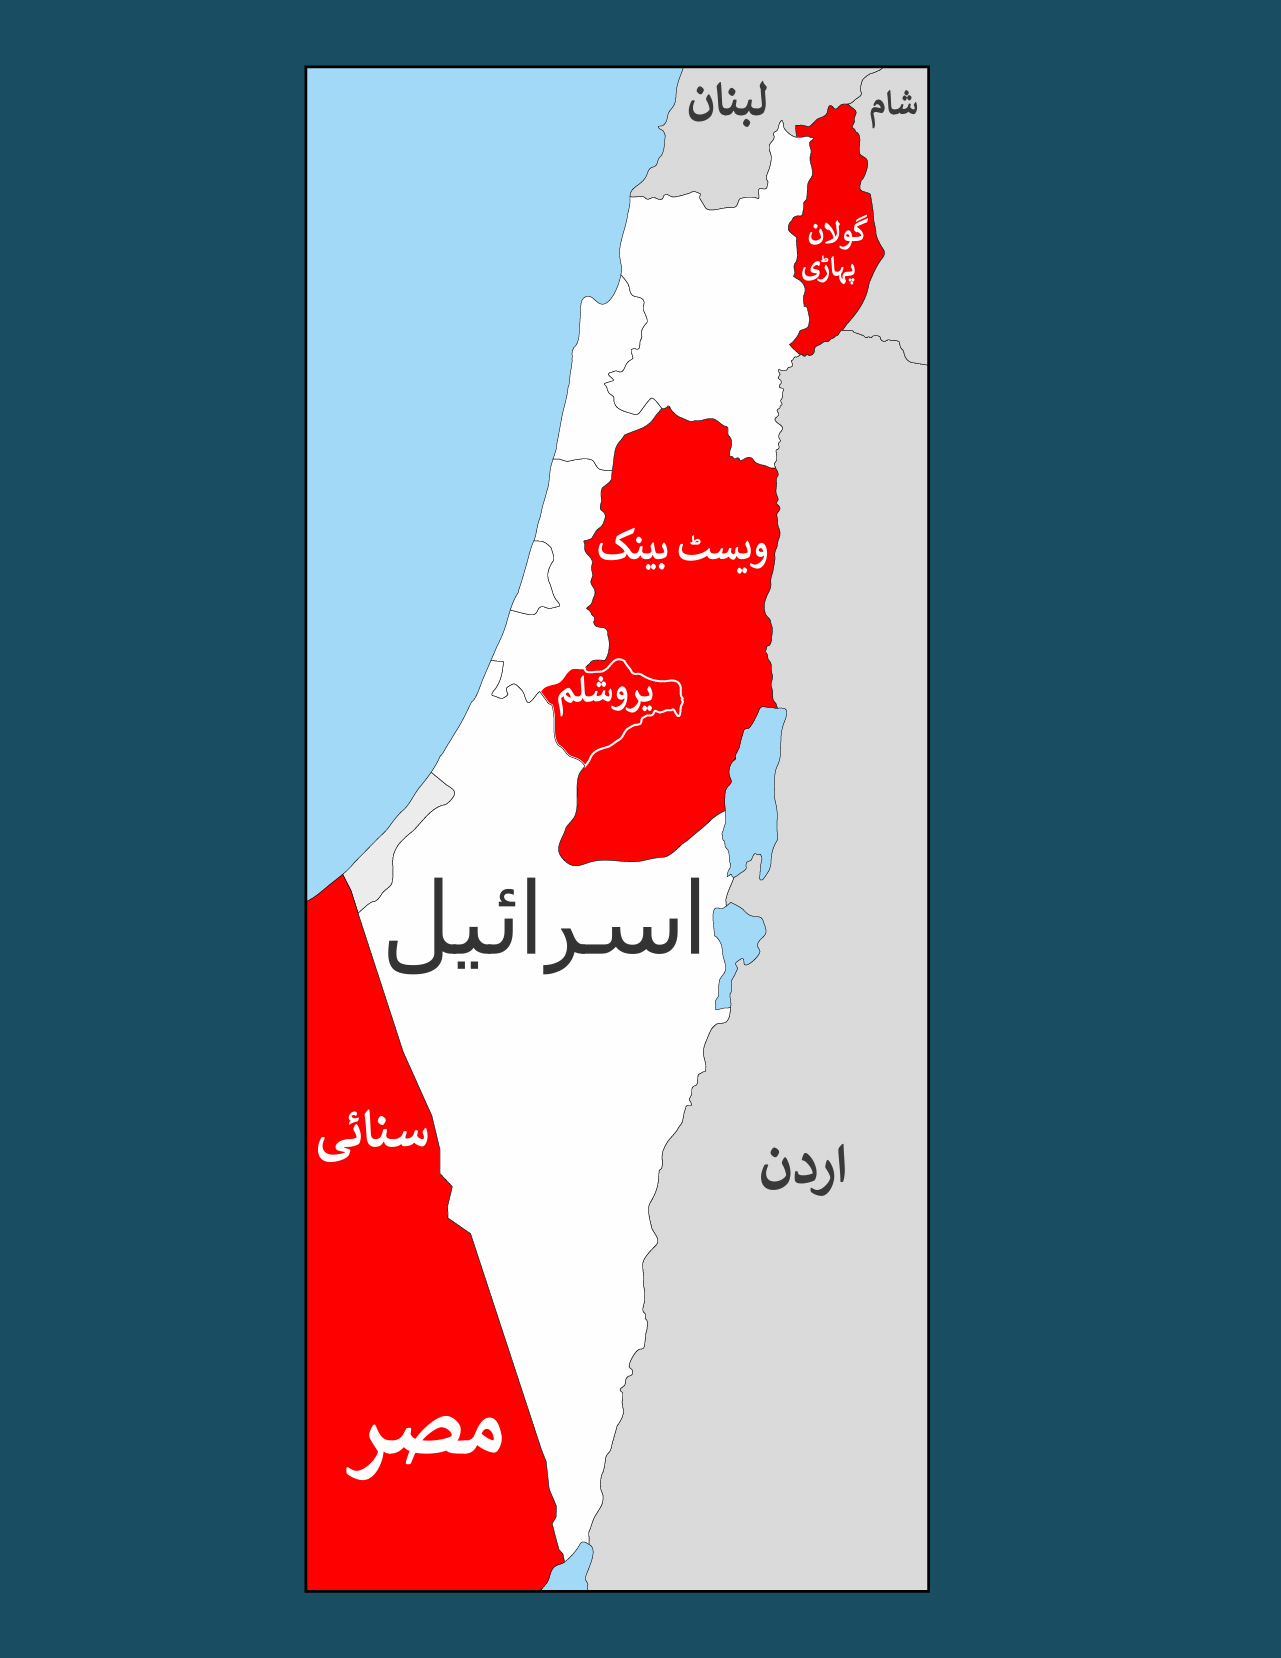 سرخ نقشے میں اسرائیل کے ذریعہ قبضہ کیے گئے علاقے